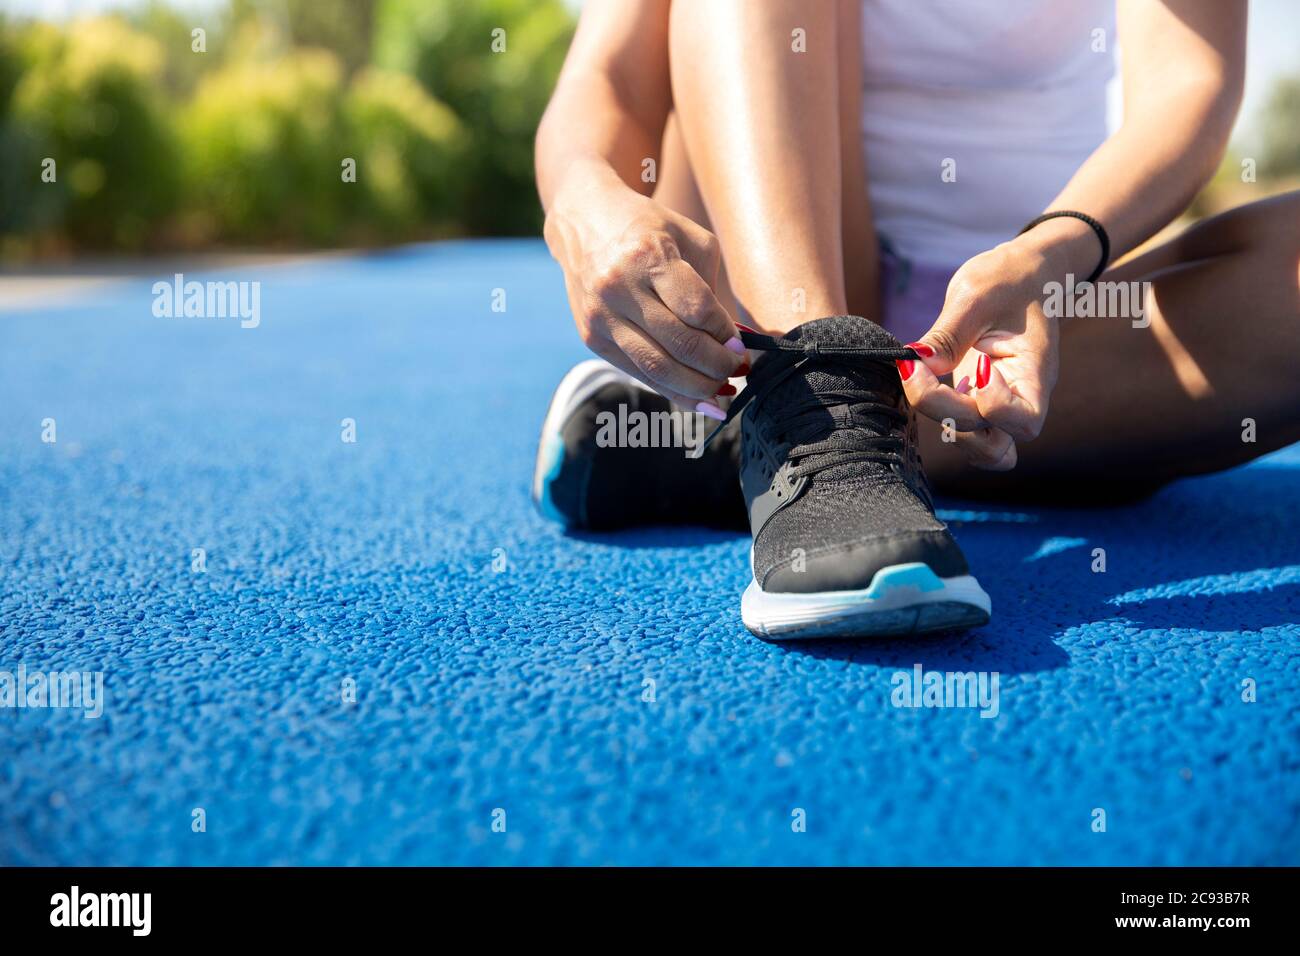 Nahaufnahme einer Sportlerin, die ihre Schnürsenkel vor dem Laufen bindet. Leerzeichen für Text. Selektiver Fokus. Konzept von Sport und gesundes Leben. Stockfoto